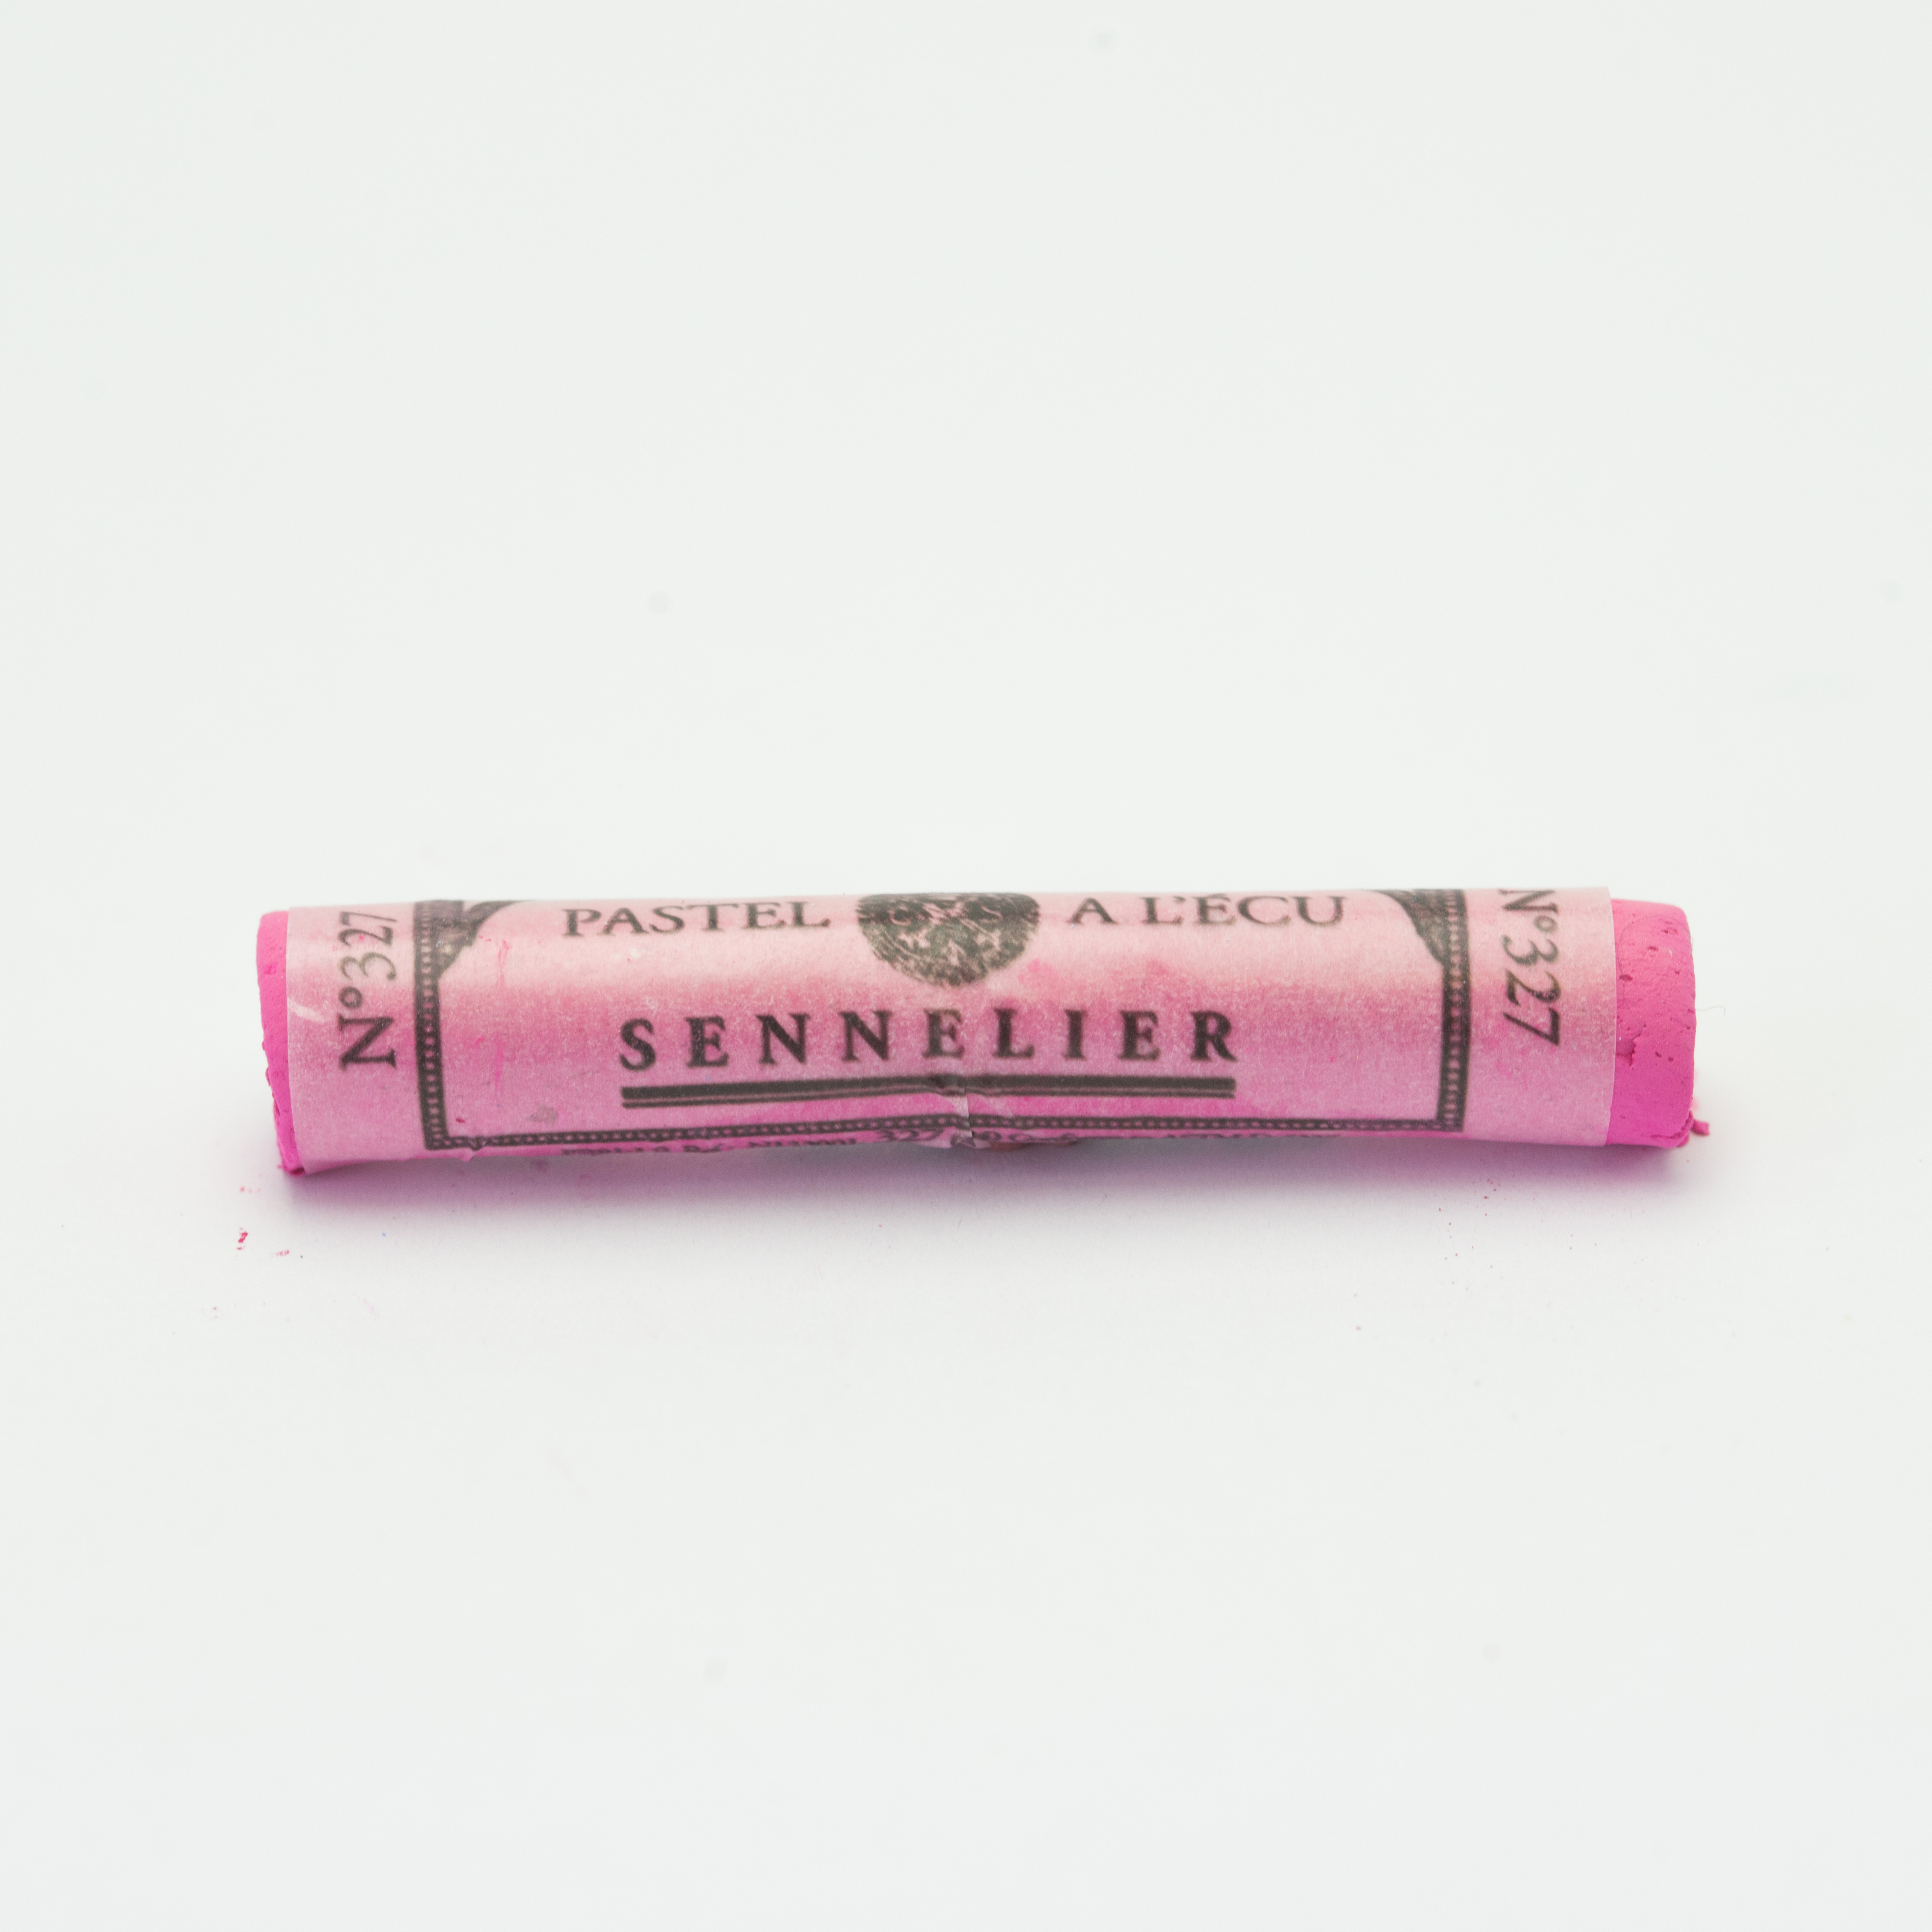 Sennelier Extra Soft Pastels - Purple Violet 327